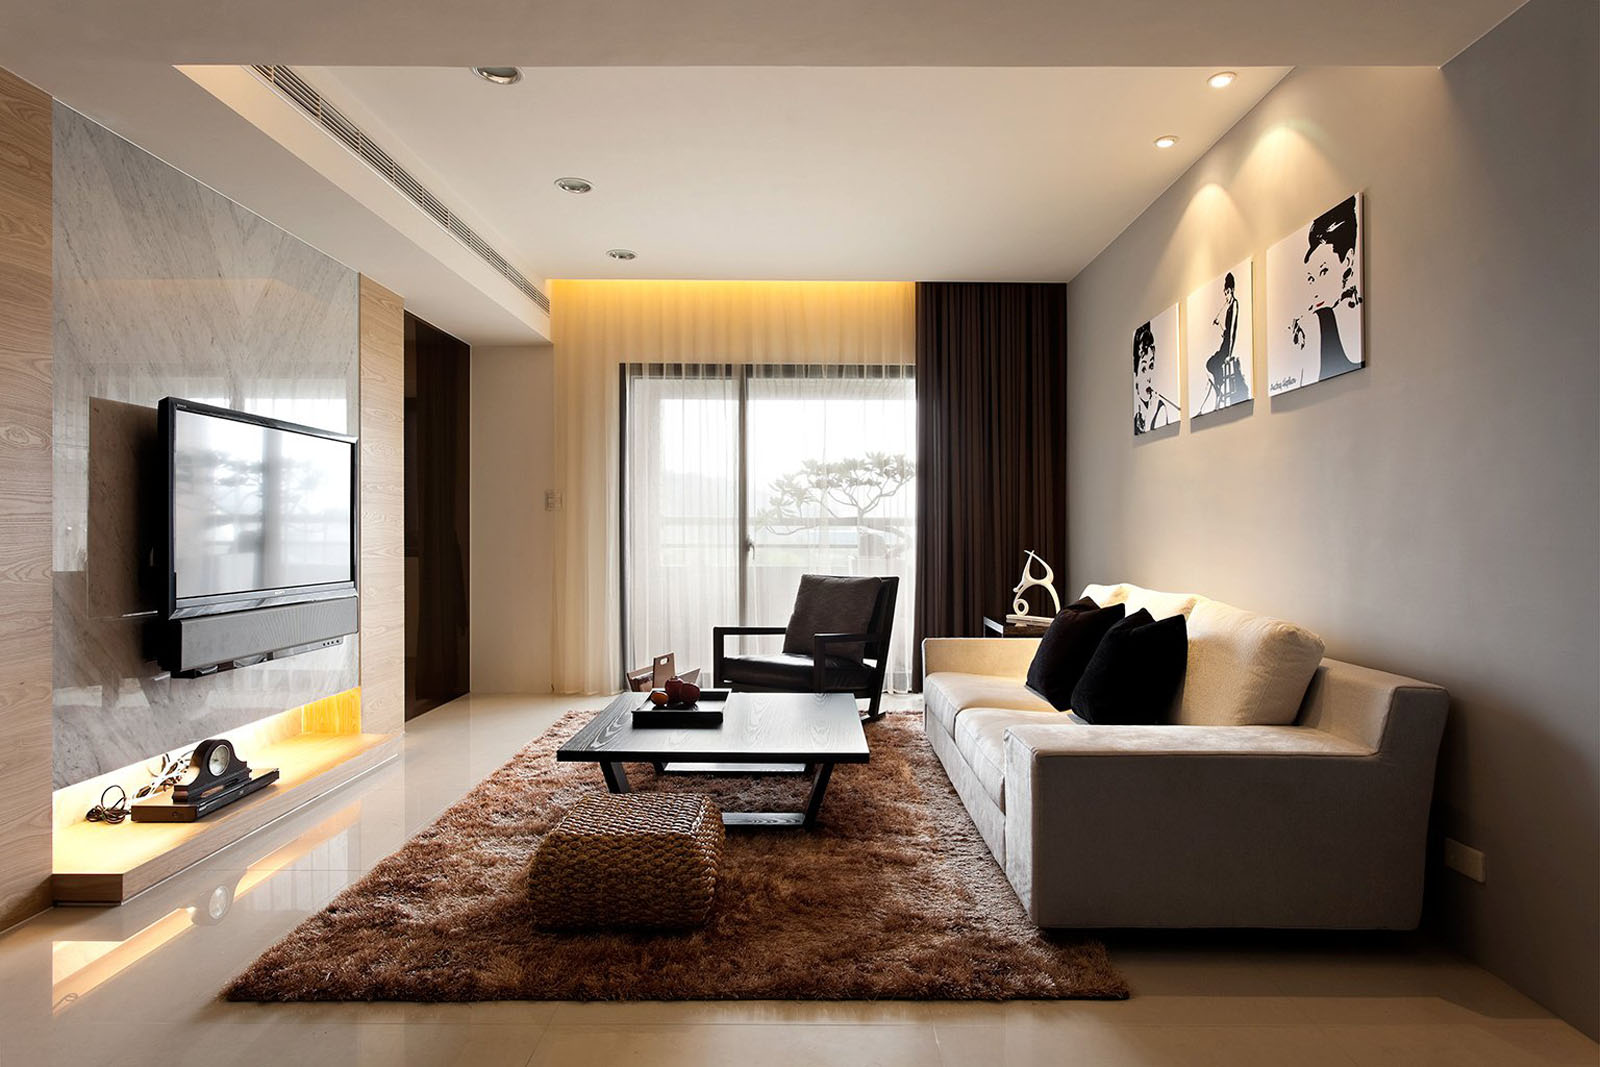 60 Desain Interior Rumah Minimalis Mewah Idaman Keluarga